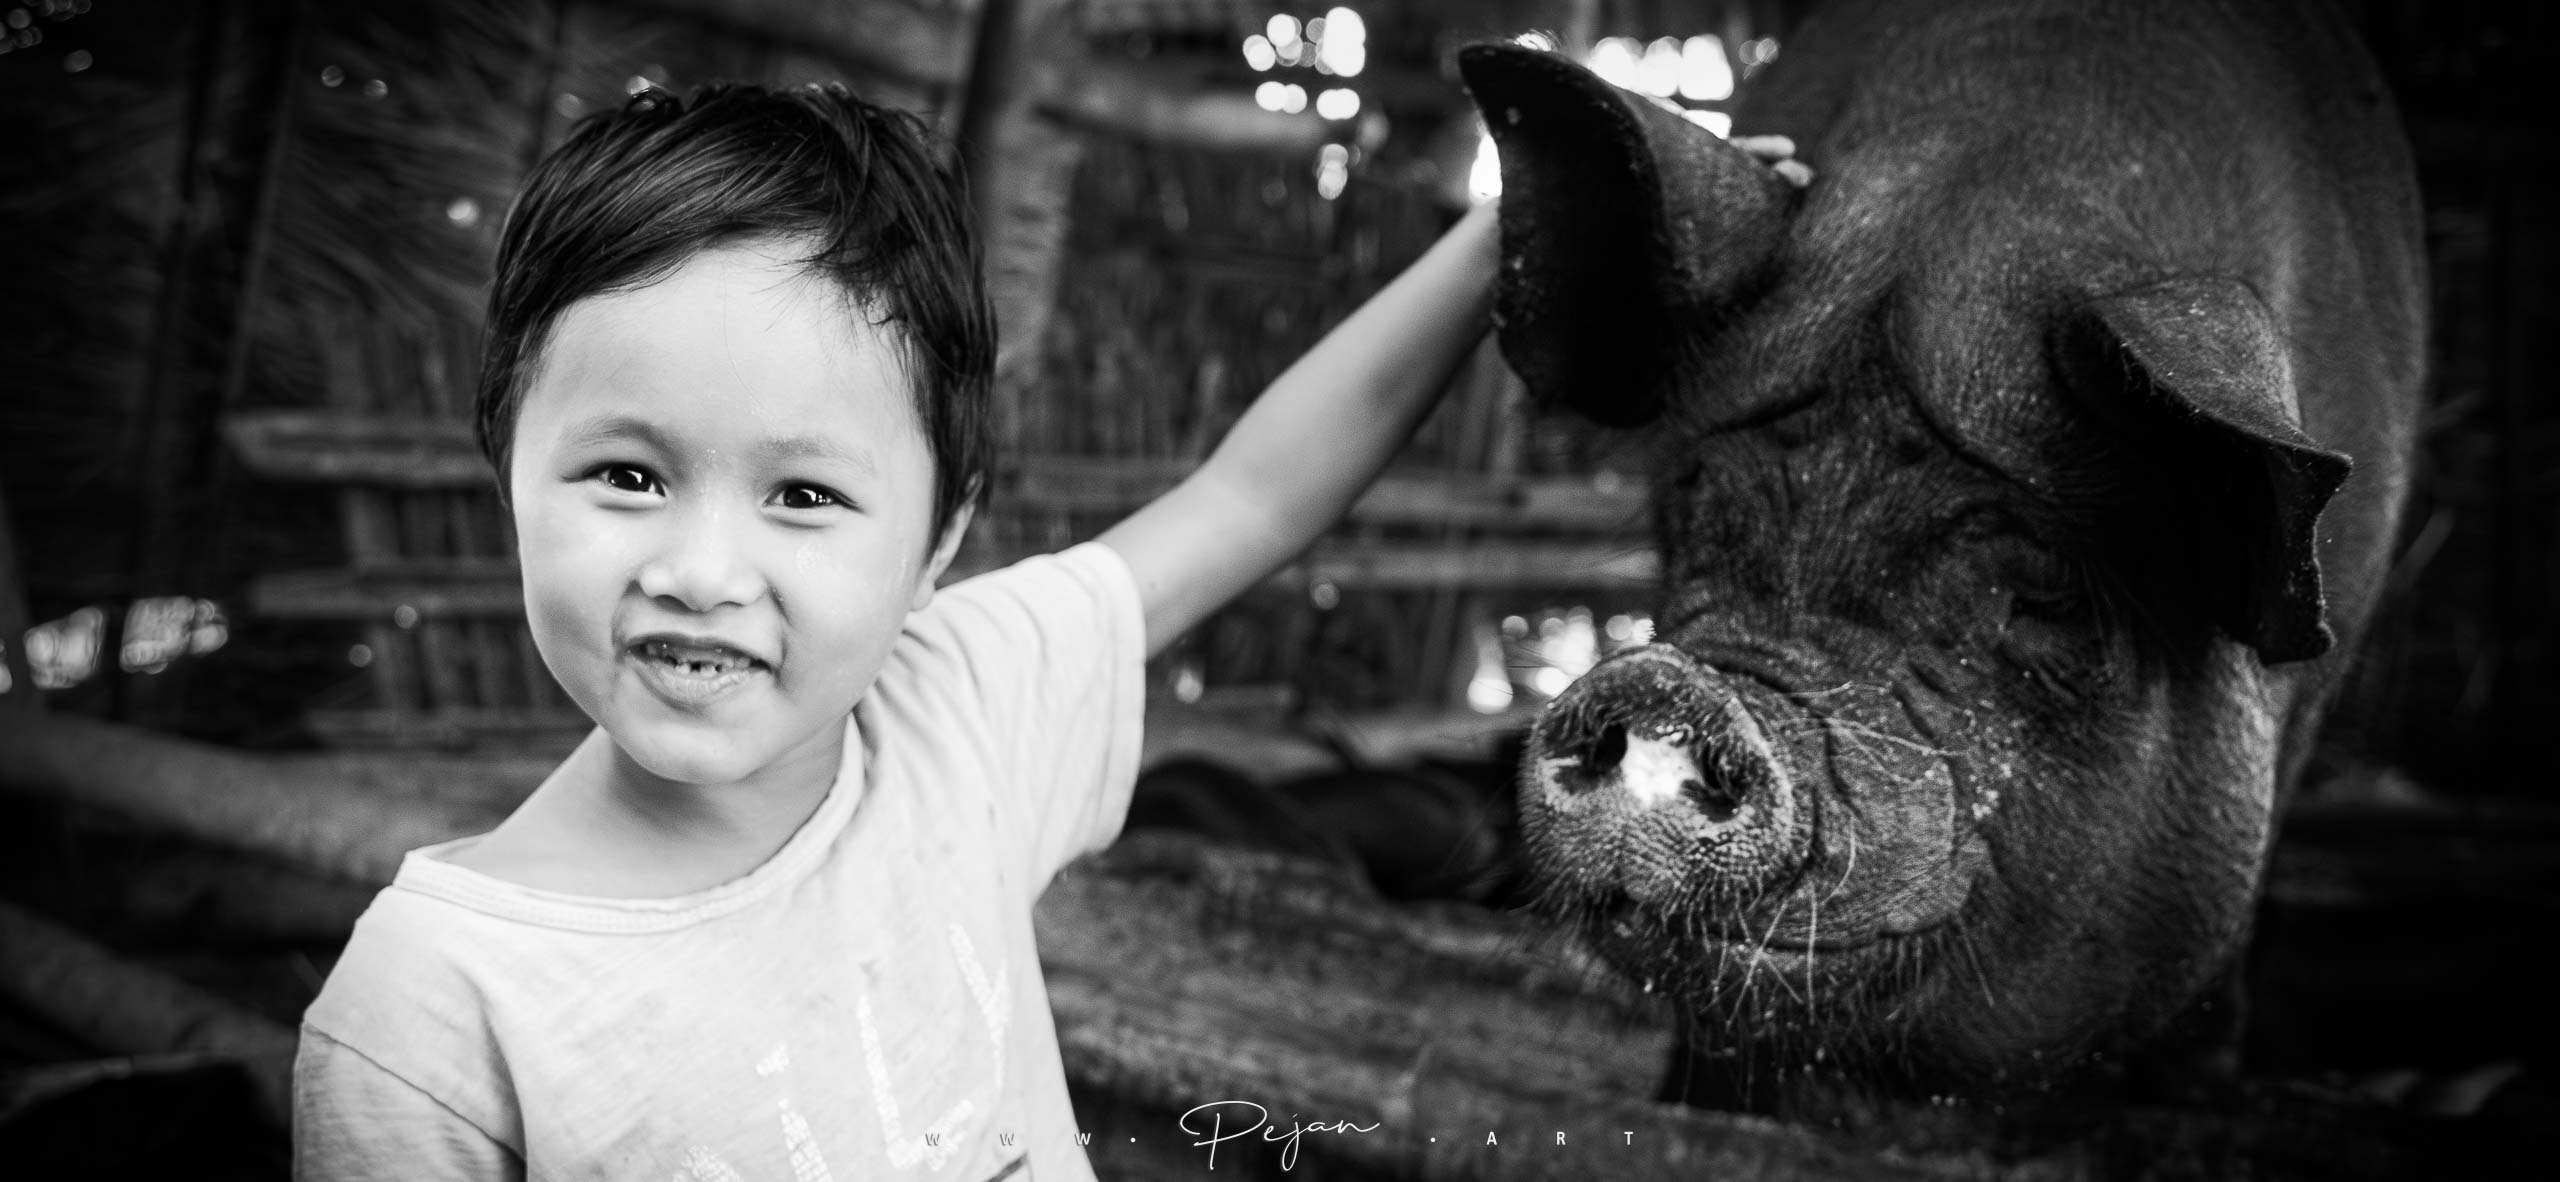 Portrait noir et blanc d'une petite fille qui caresse une gros cochon asiatique. Elle regarde l'objectif. Lac Inle, Birmanie.